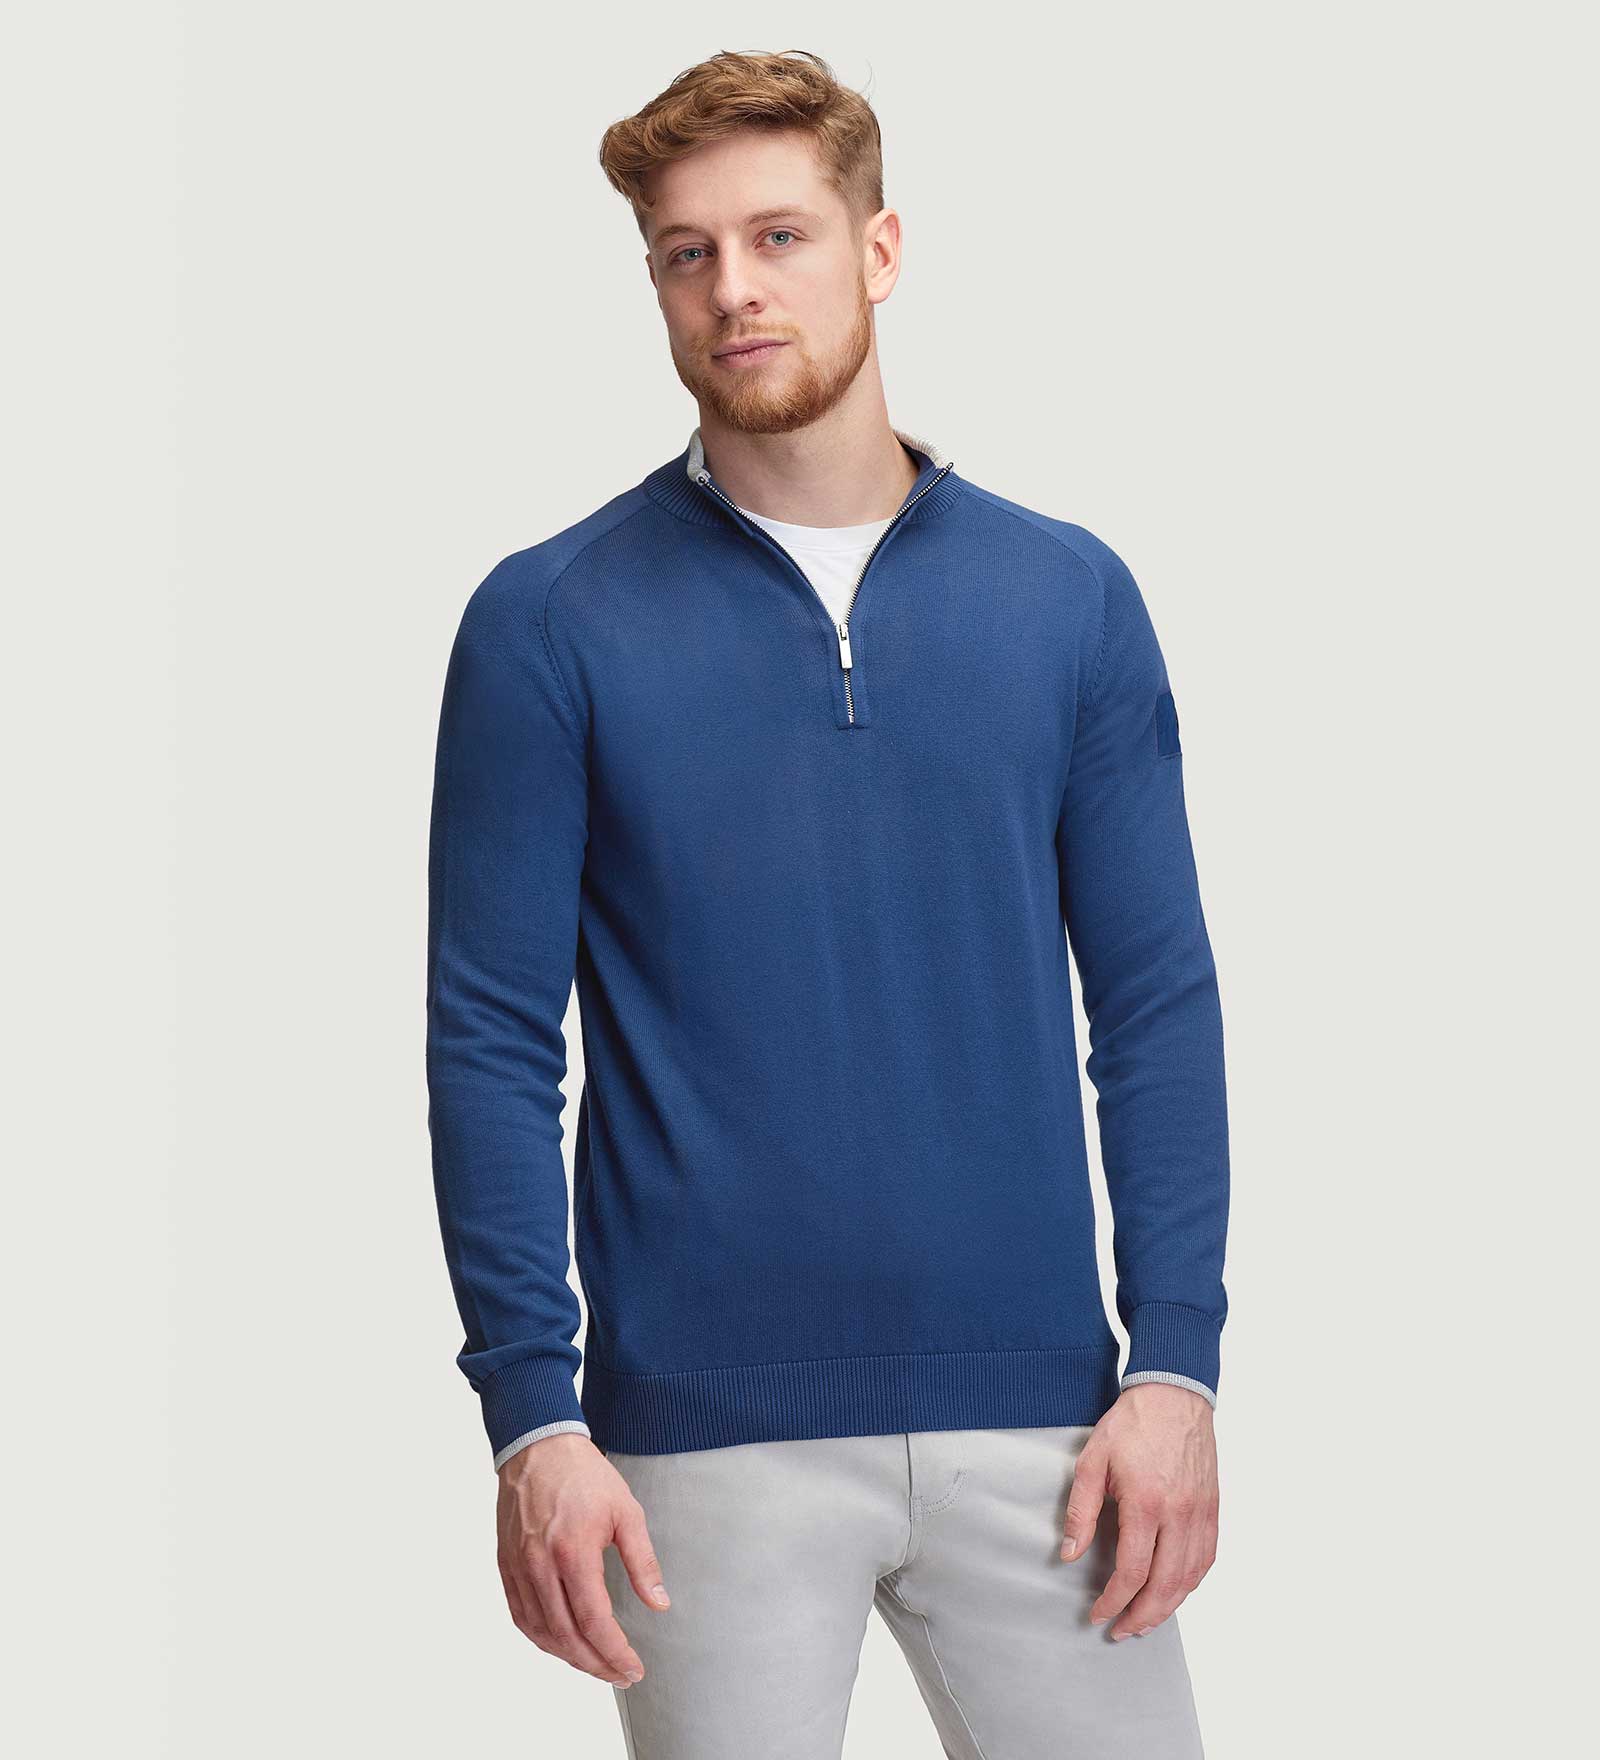 CODE-ZERO Half-Zip Sweater Men Rigging Navy Blue L | CODE-ZERO